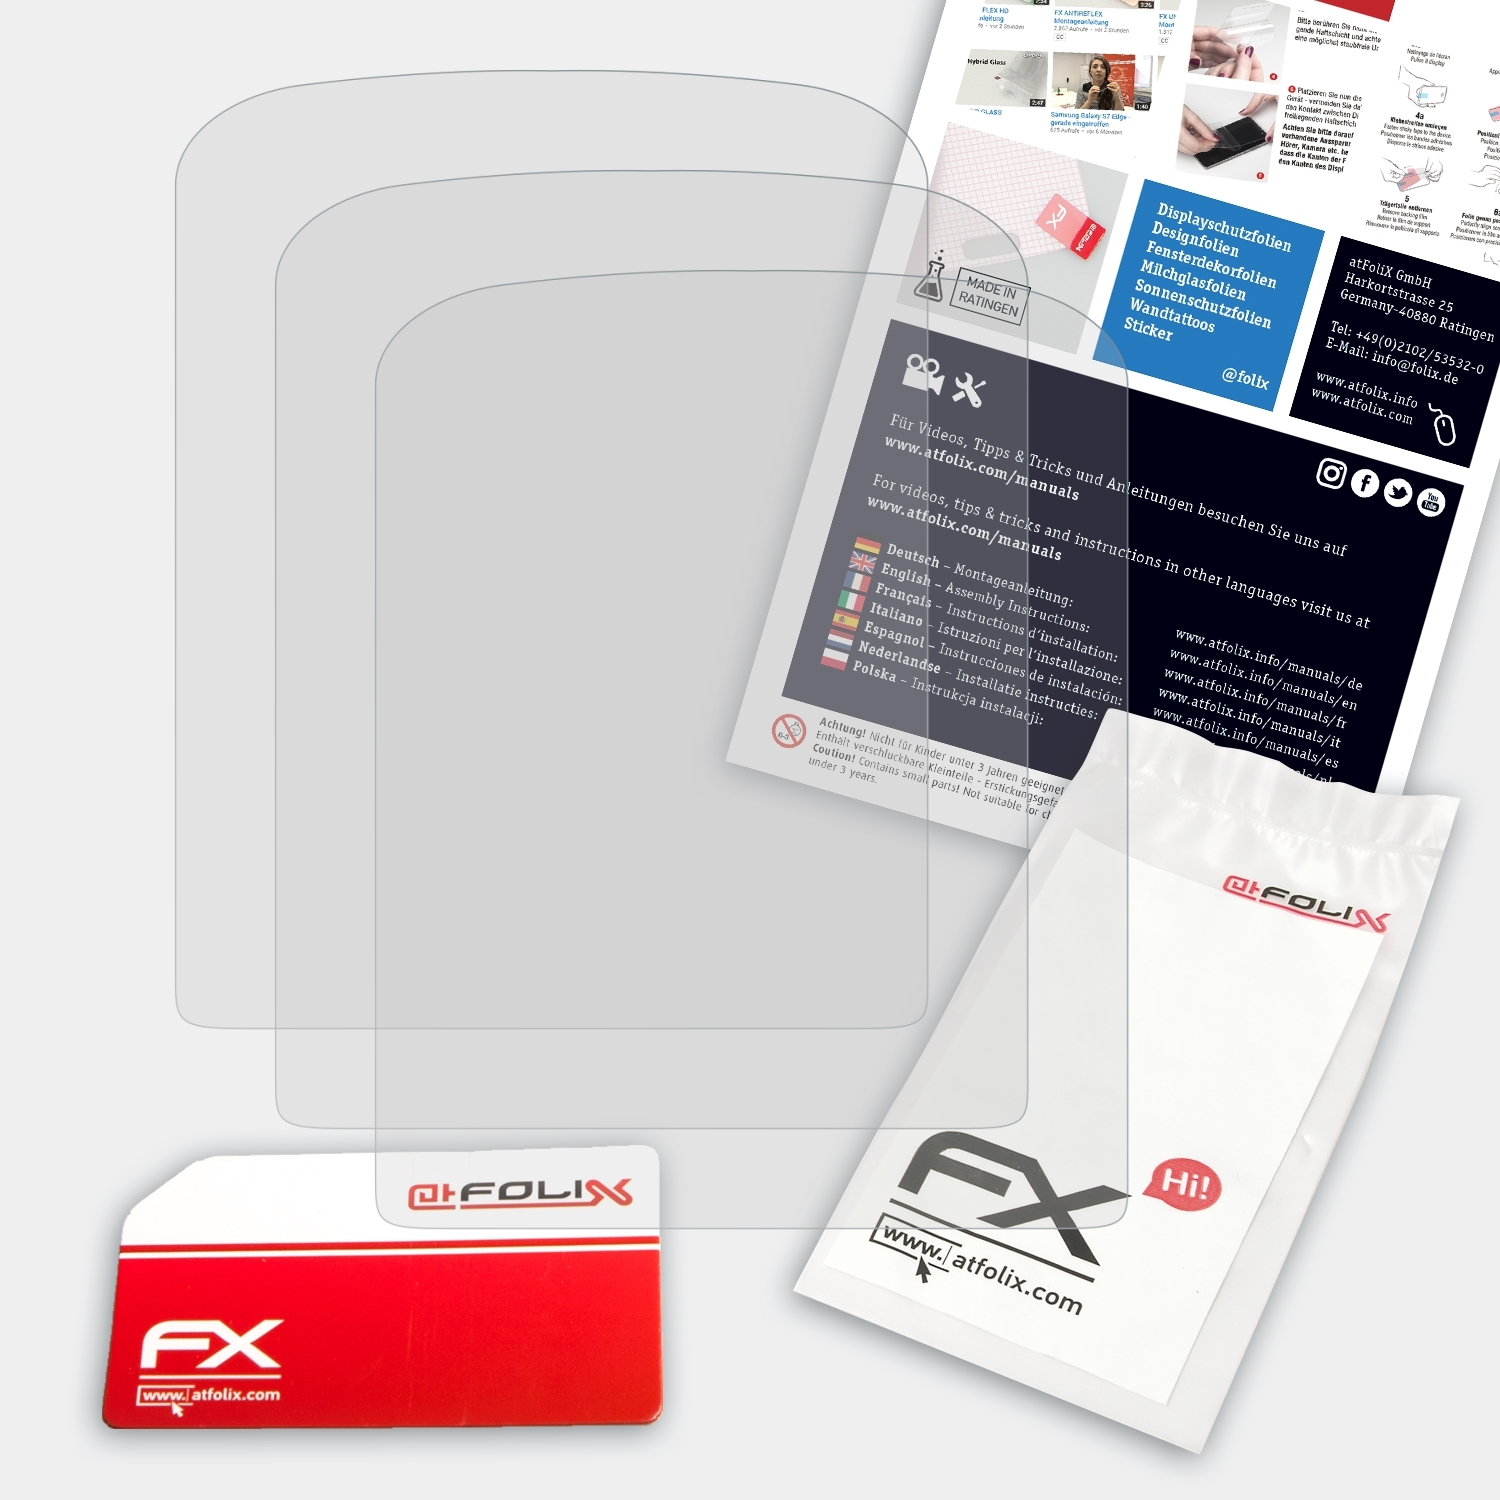 Sansa Fuze+) ATFOLIX Sandisk 3x FX-Antireflex Displayschutz(für